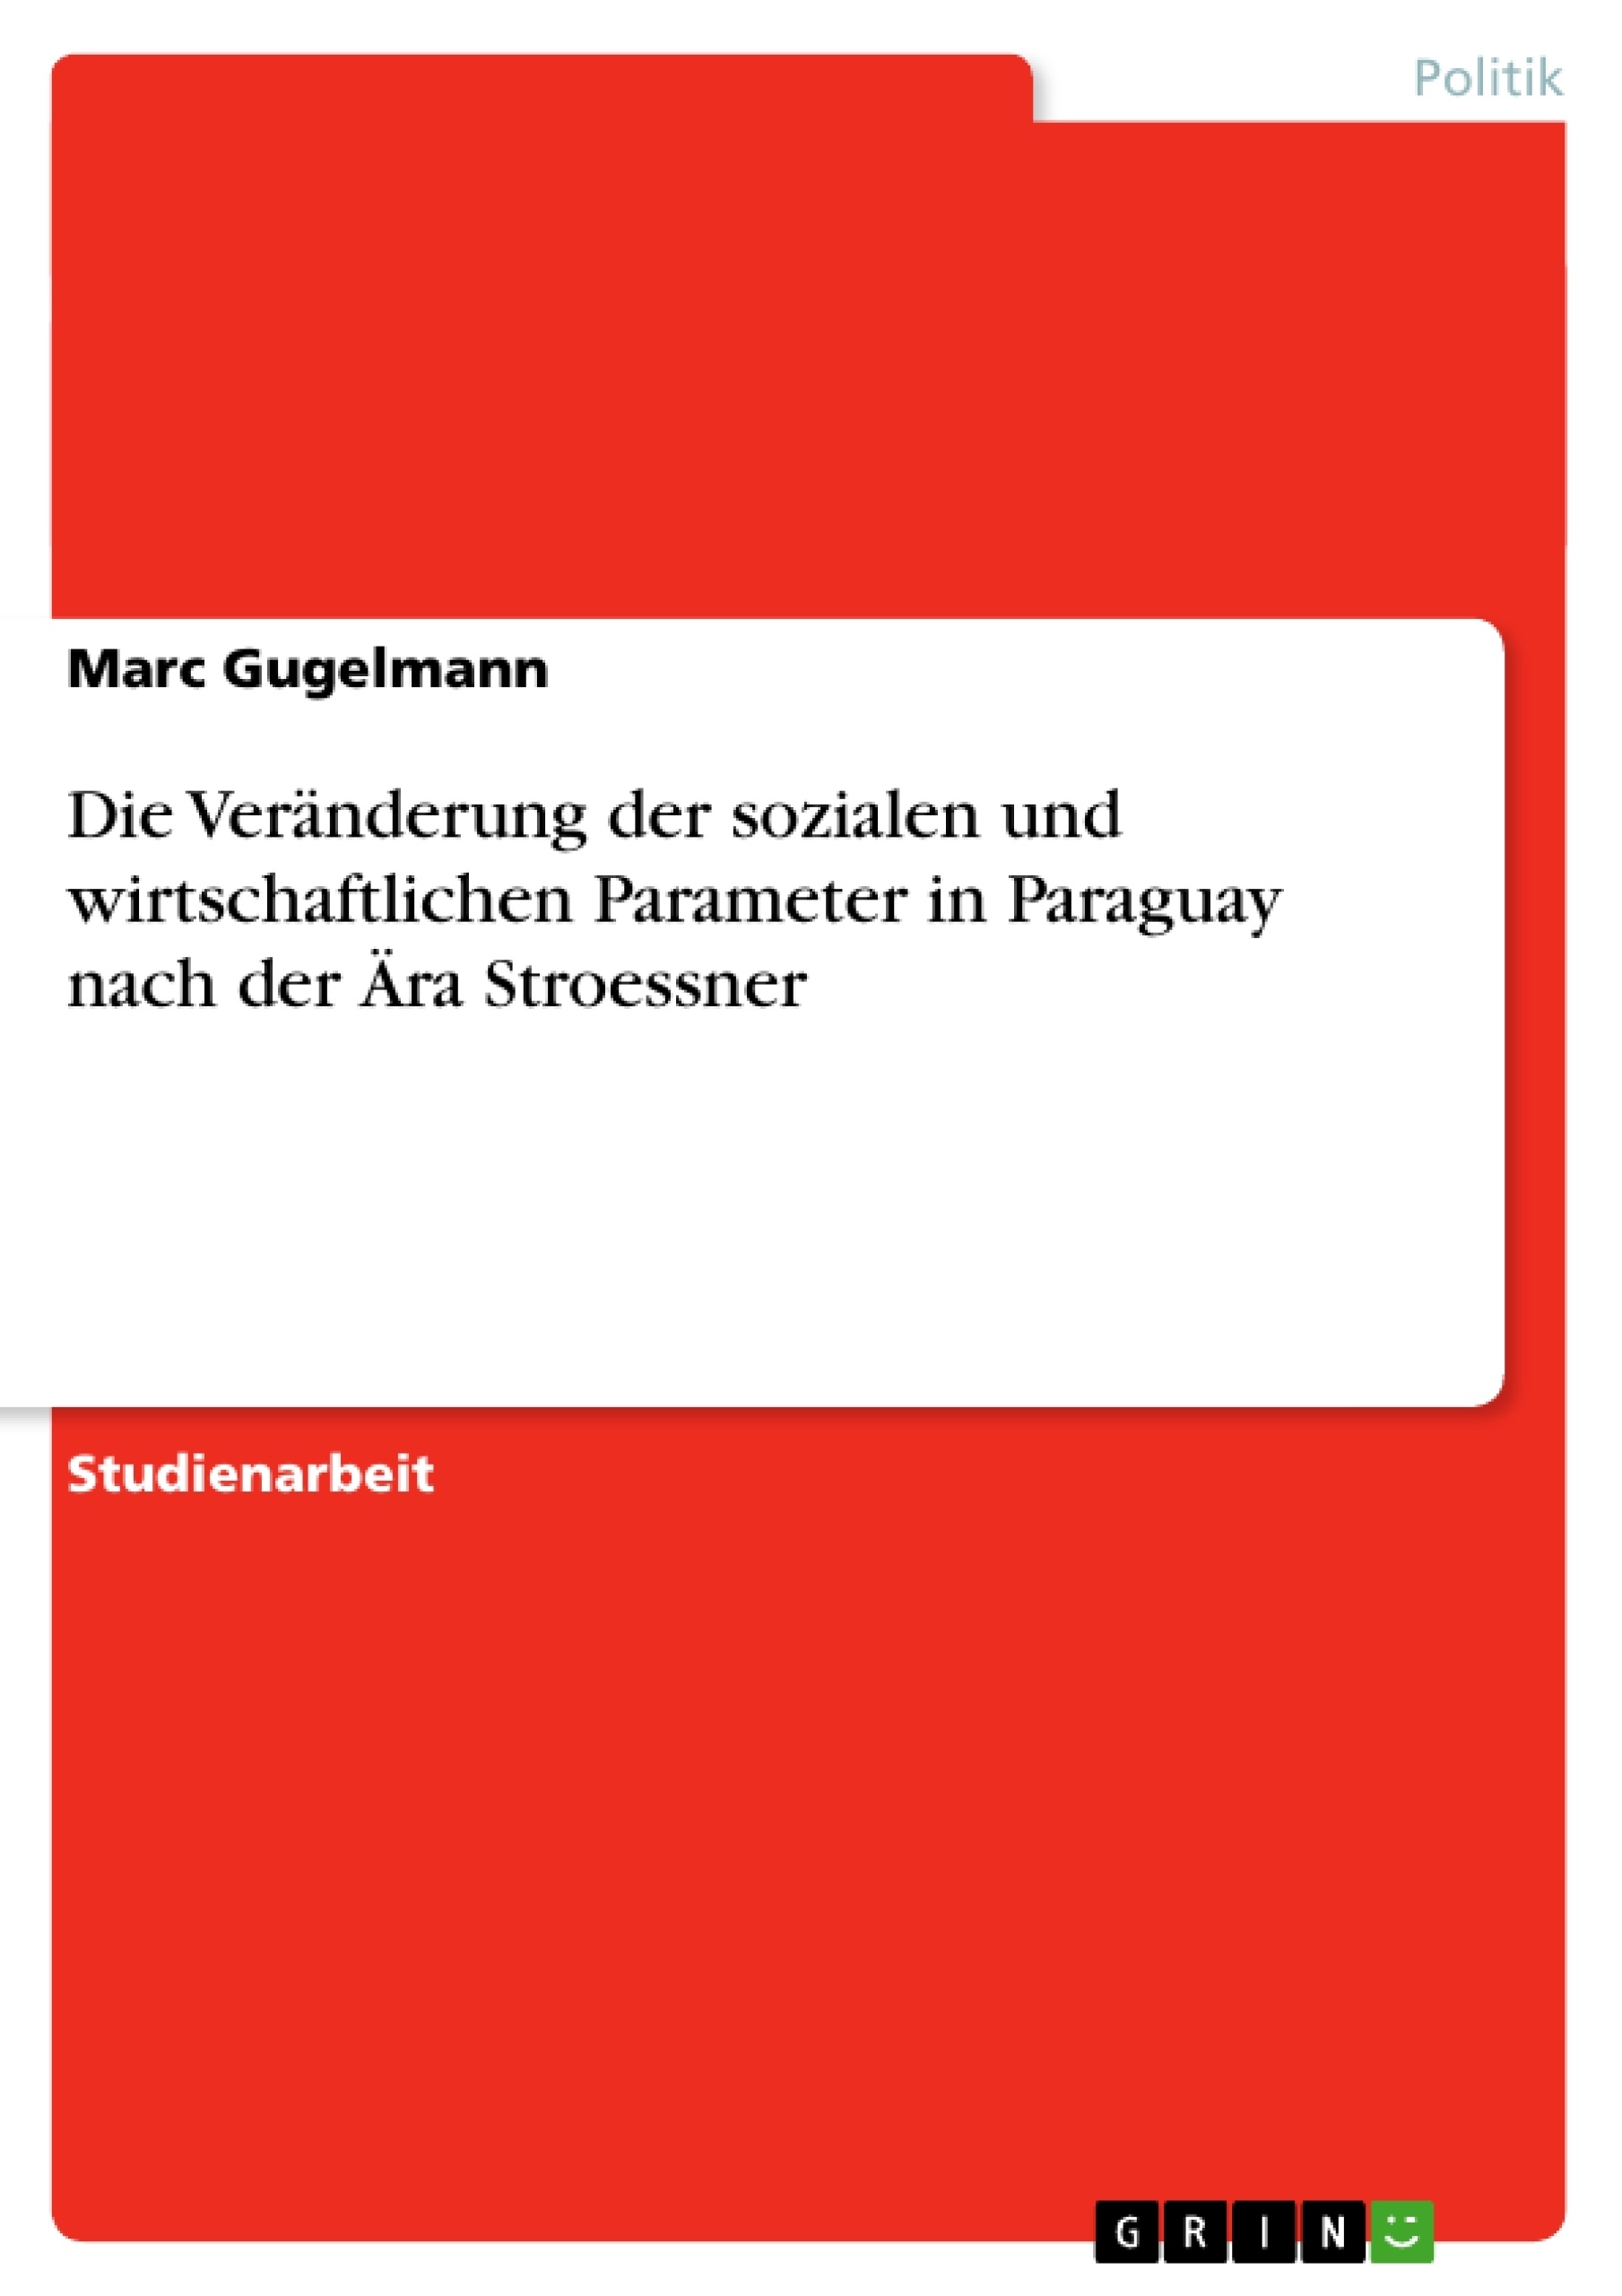 Titre: Die Veränderung der sozialen und wirtschaftlichen Parameter in Paraguay nach der Ära Stroessner